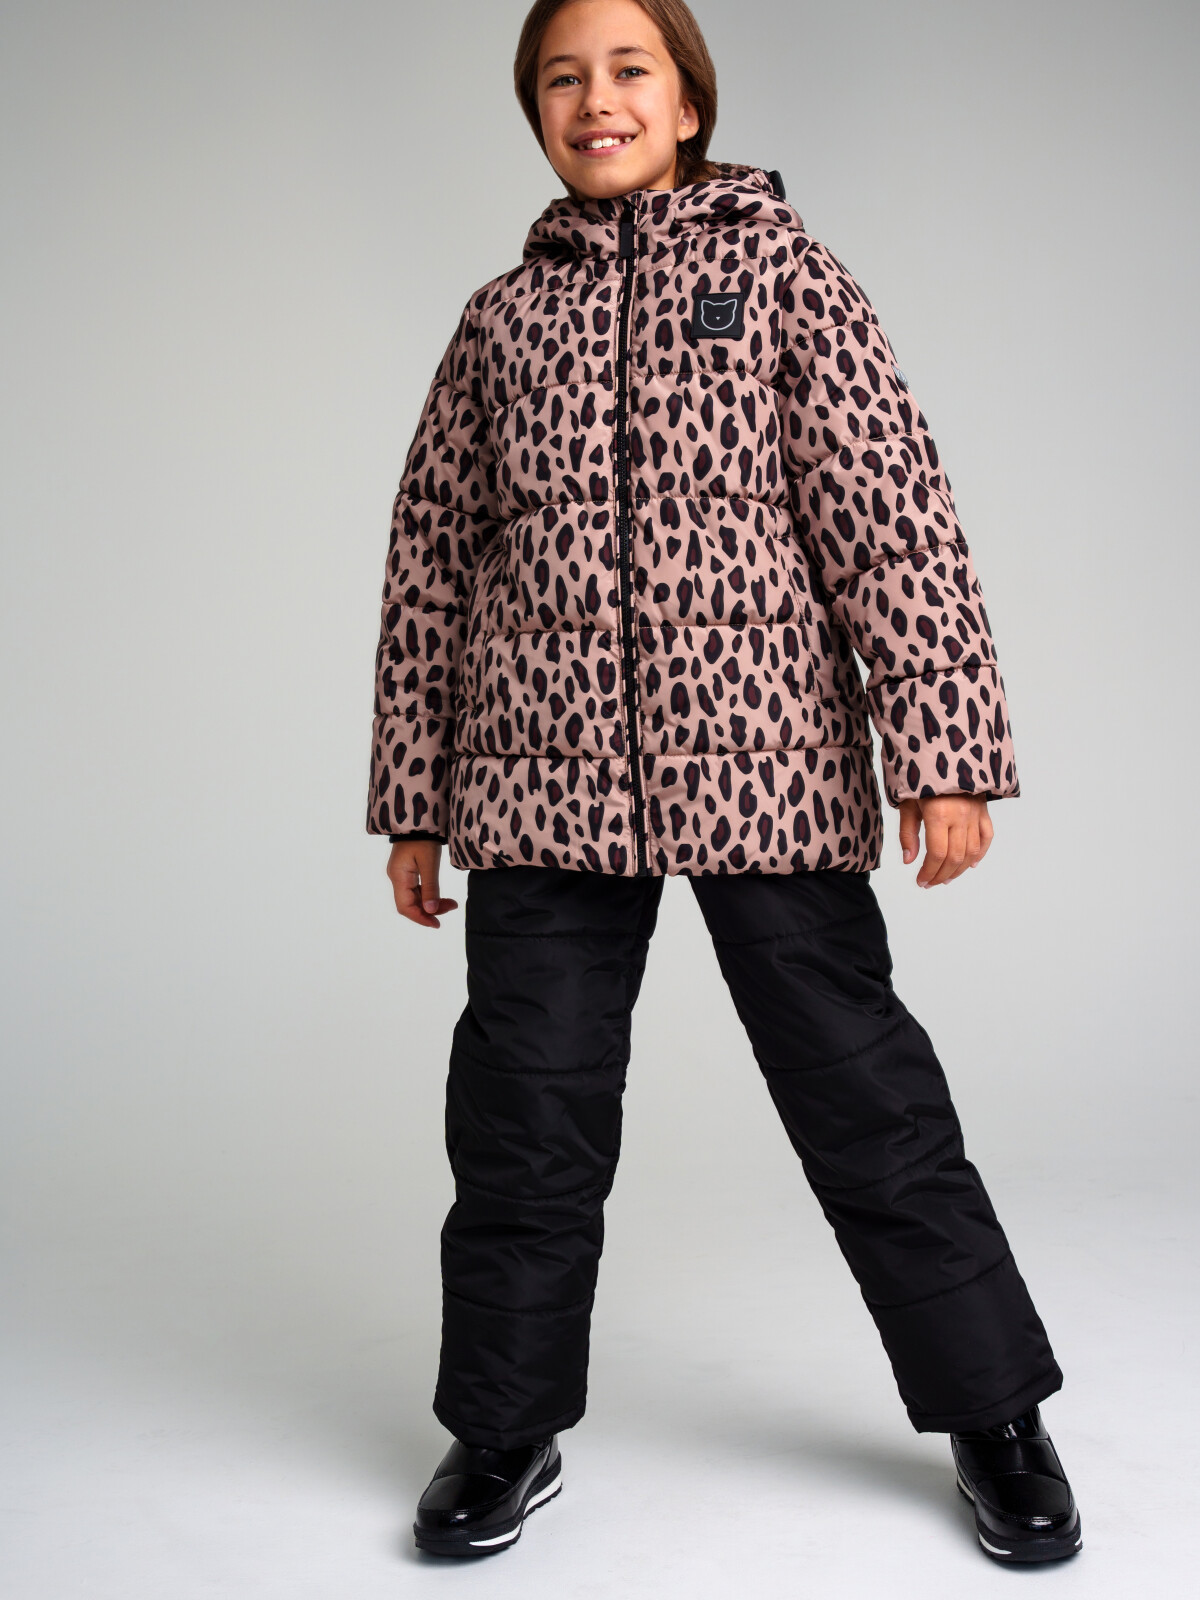 Комплект для девочек PlayToday: куртка, брюки, черный,коричневый, 152